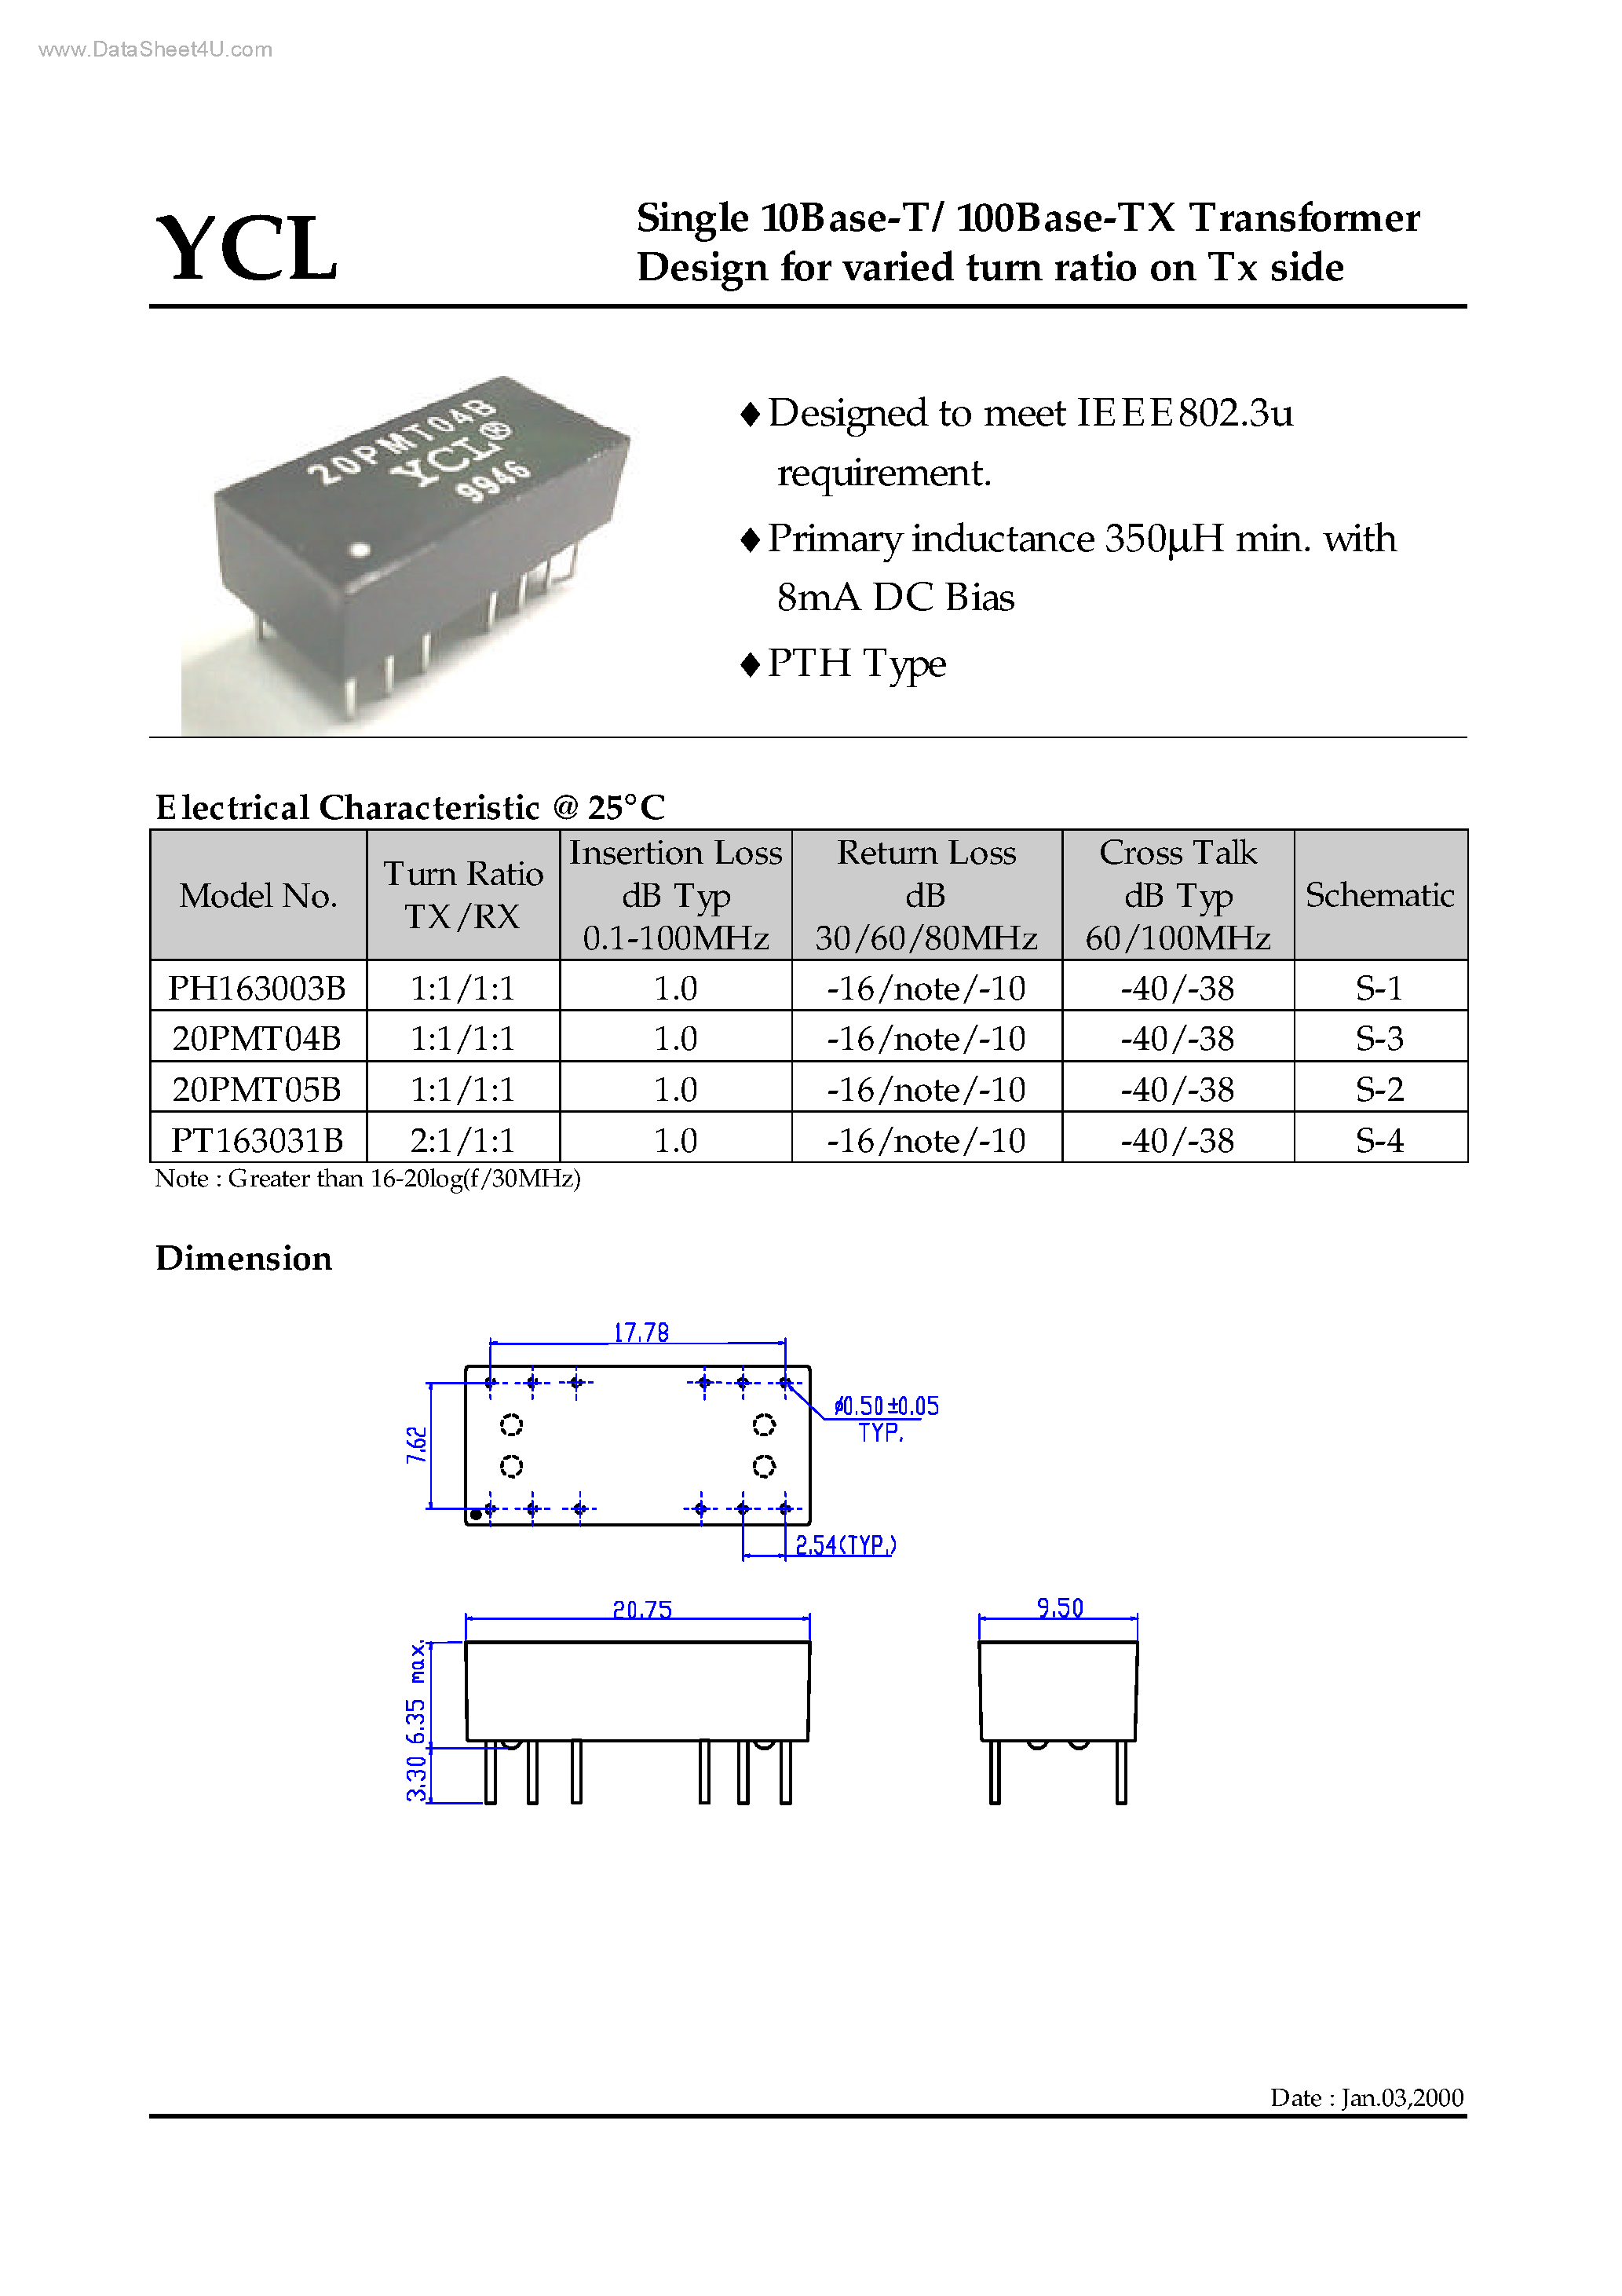 Datasheet PH163003B - Single 10Base-T/100Base-TX Transformer Design page 1